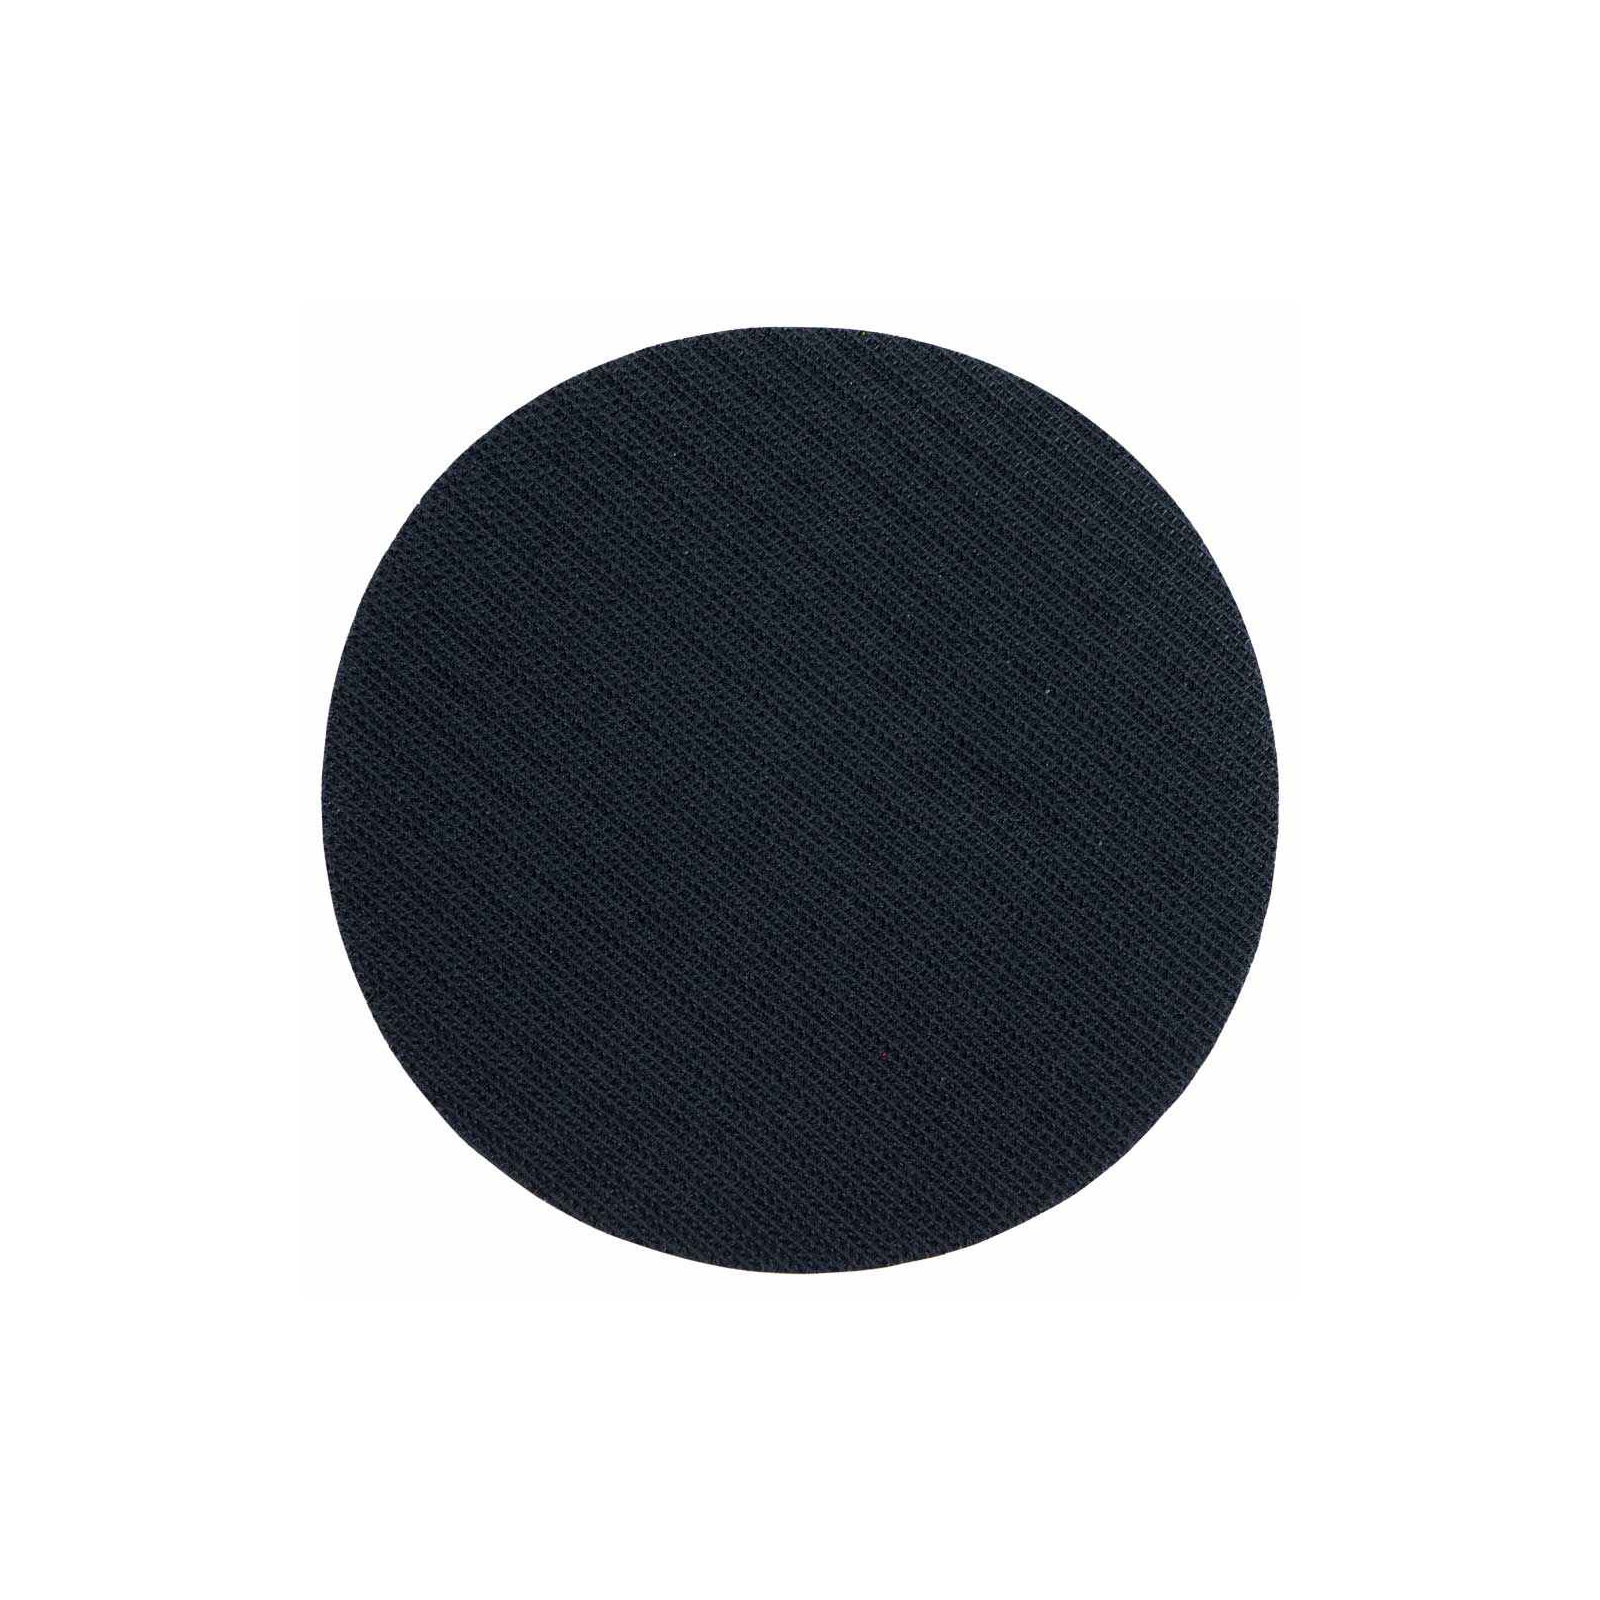 Круг зачистной Sigma шлифовальный мягкий 125мм с липучкой (9182151) изображение 3